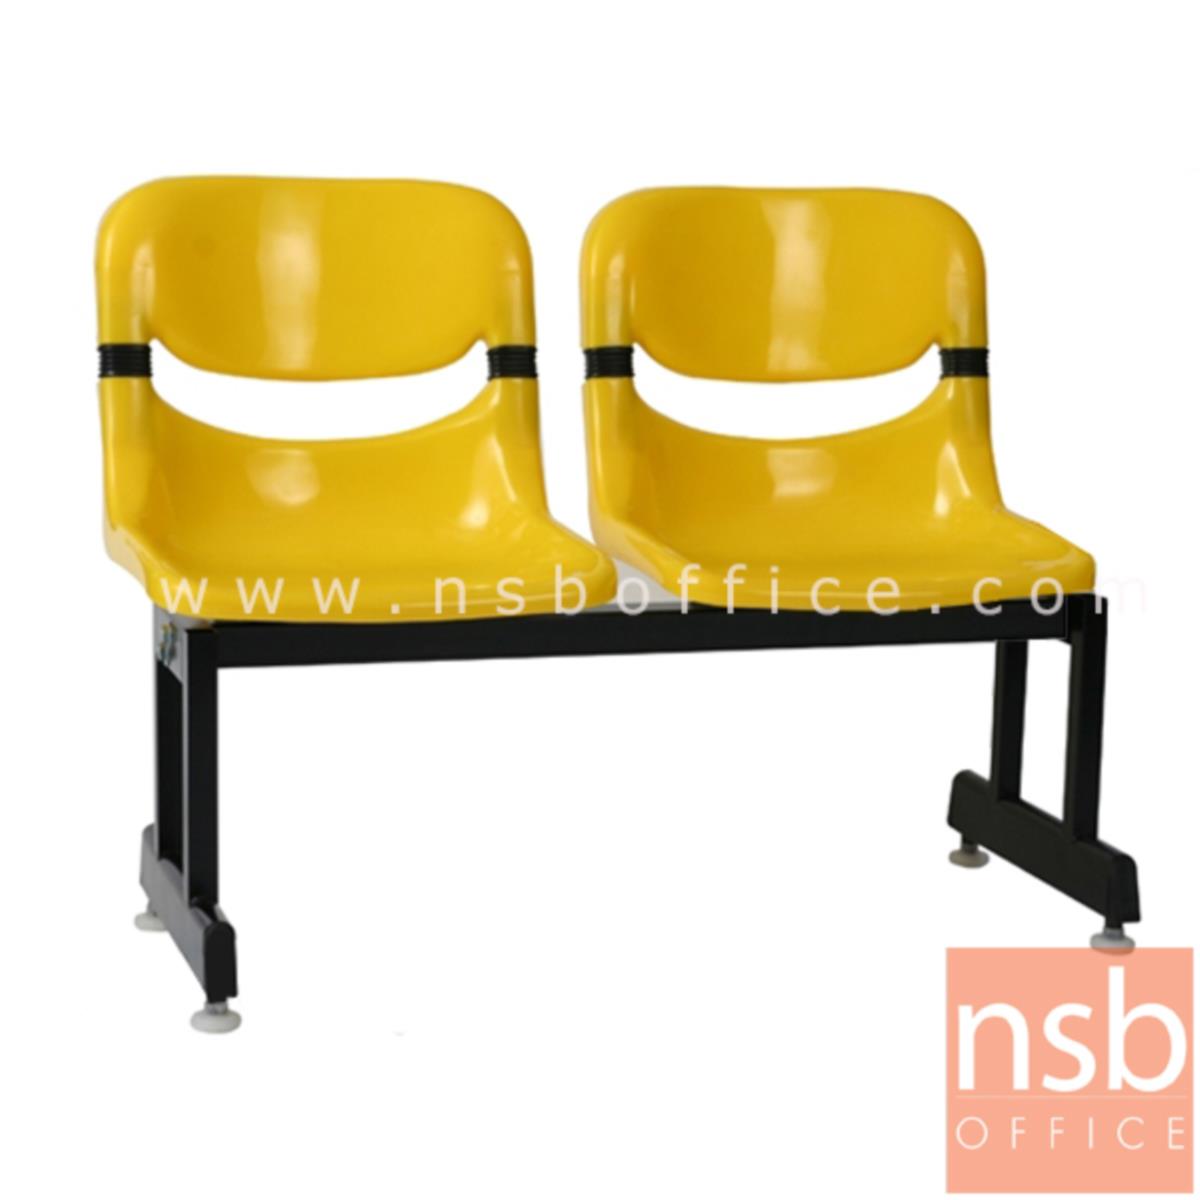 เก้าอี้นั่งคอยเฟรมโพลี่ รุ่น EX-11 2 ,3 ,4 ที่นั่ง ขนาด 100W ,155W ,200W cm. ขาเหล็ก